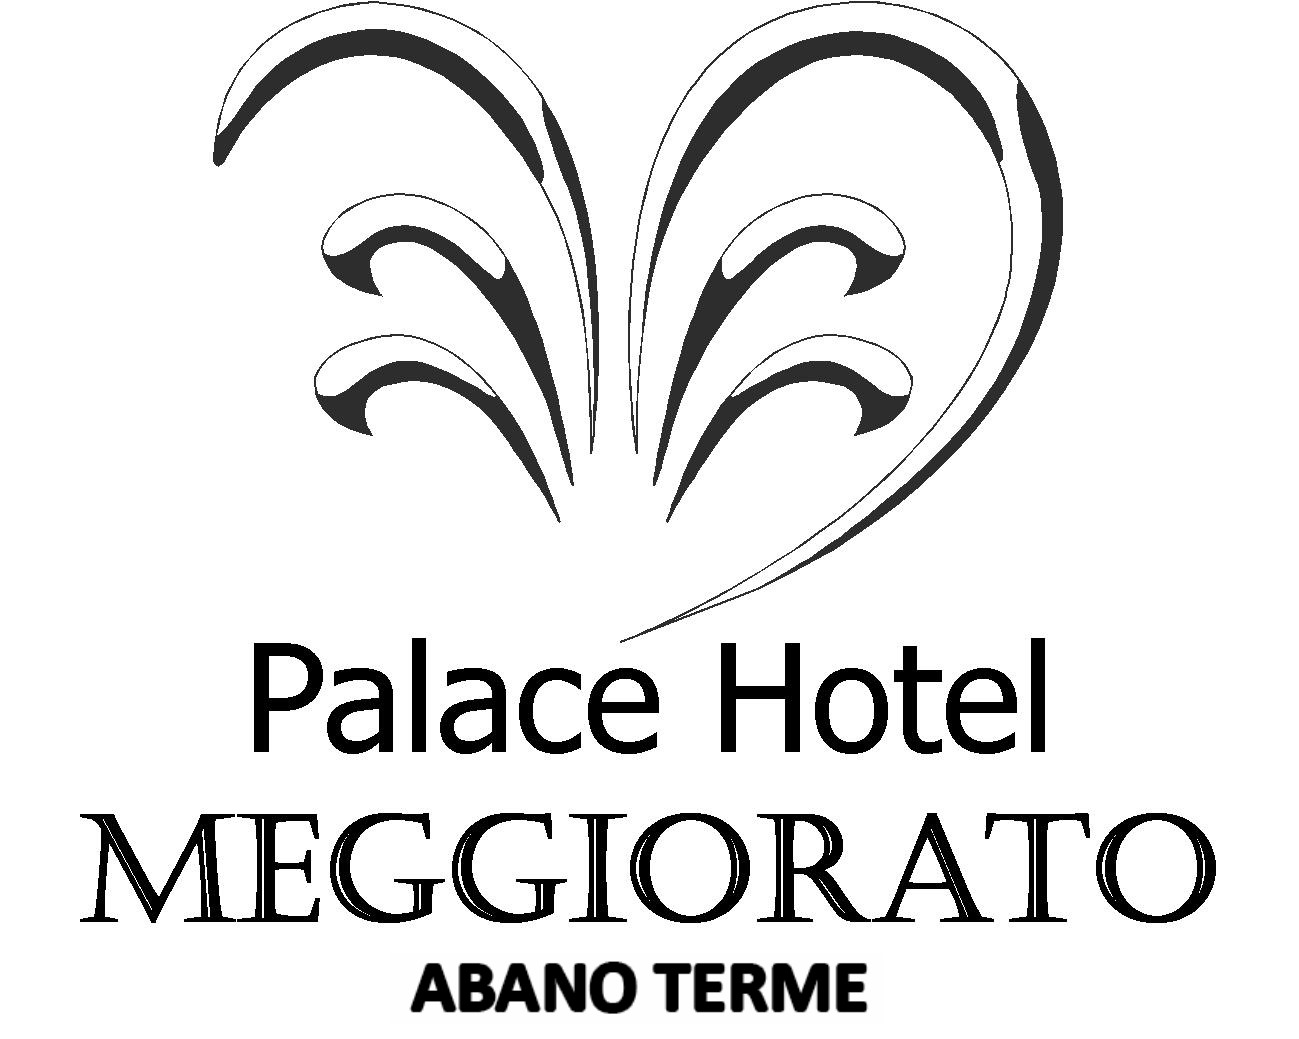 Hotel Meggiorato